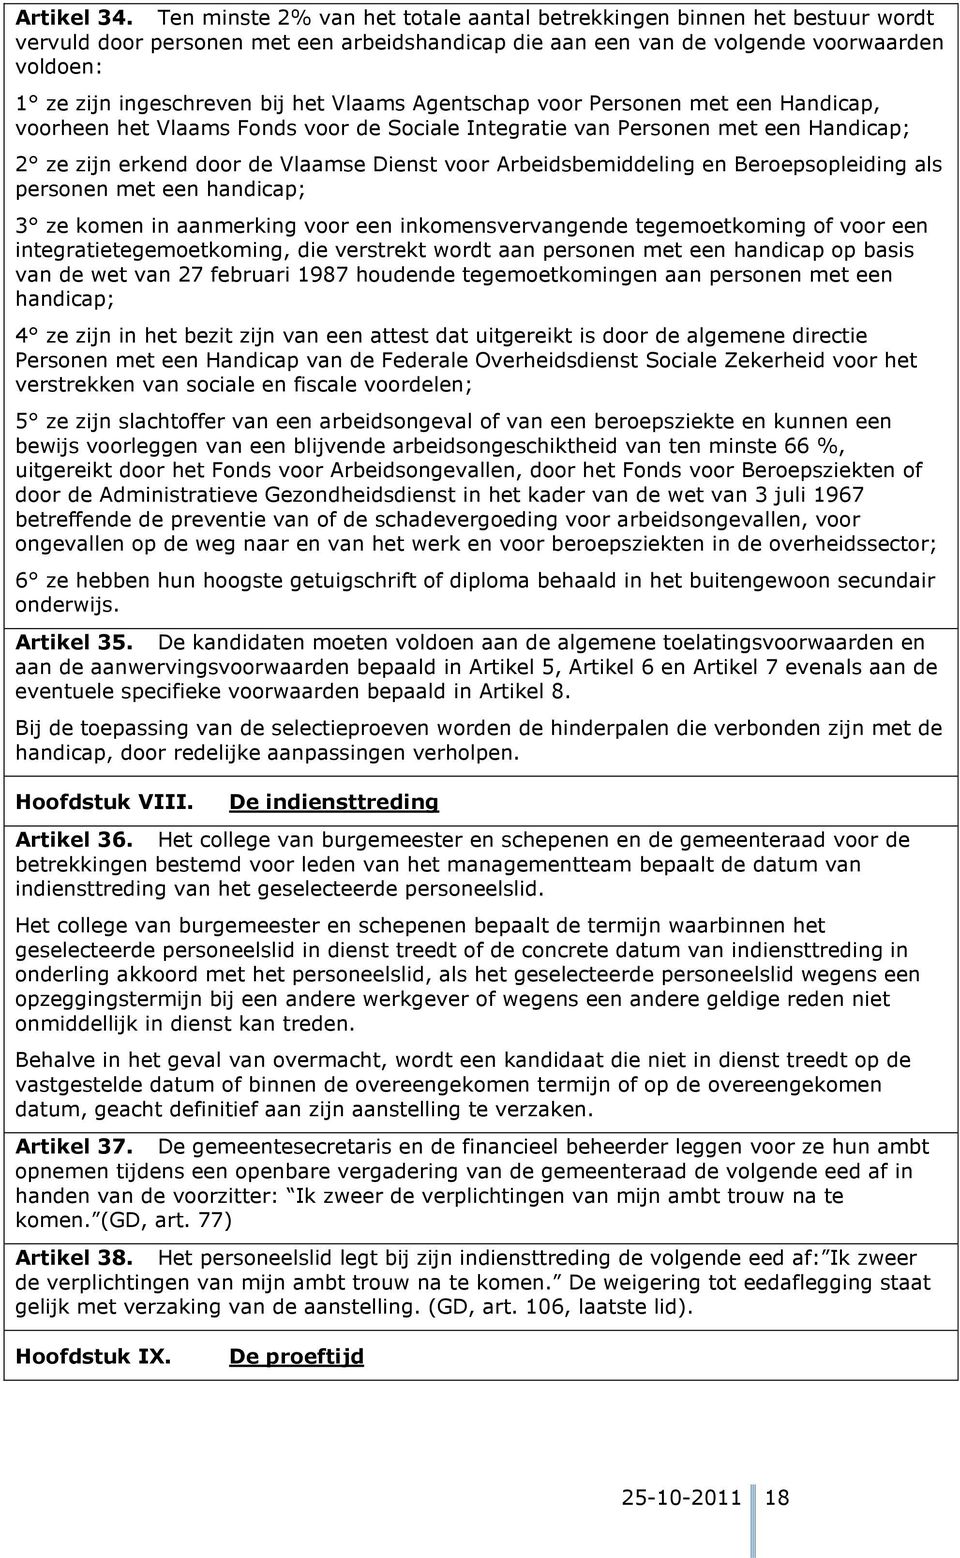 Vlaams Agentschap voor Personen met een Handicap, voorheen het Vlaams Fonds voor de Sociale Integratie van Personen met een Handicap; 2 ze zijn erkend door de Vlaamse Dienst voor Arbeidsbemiddeling